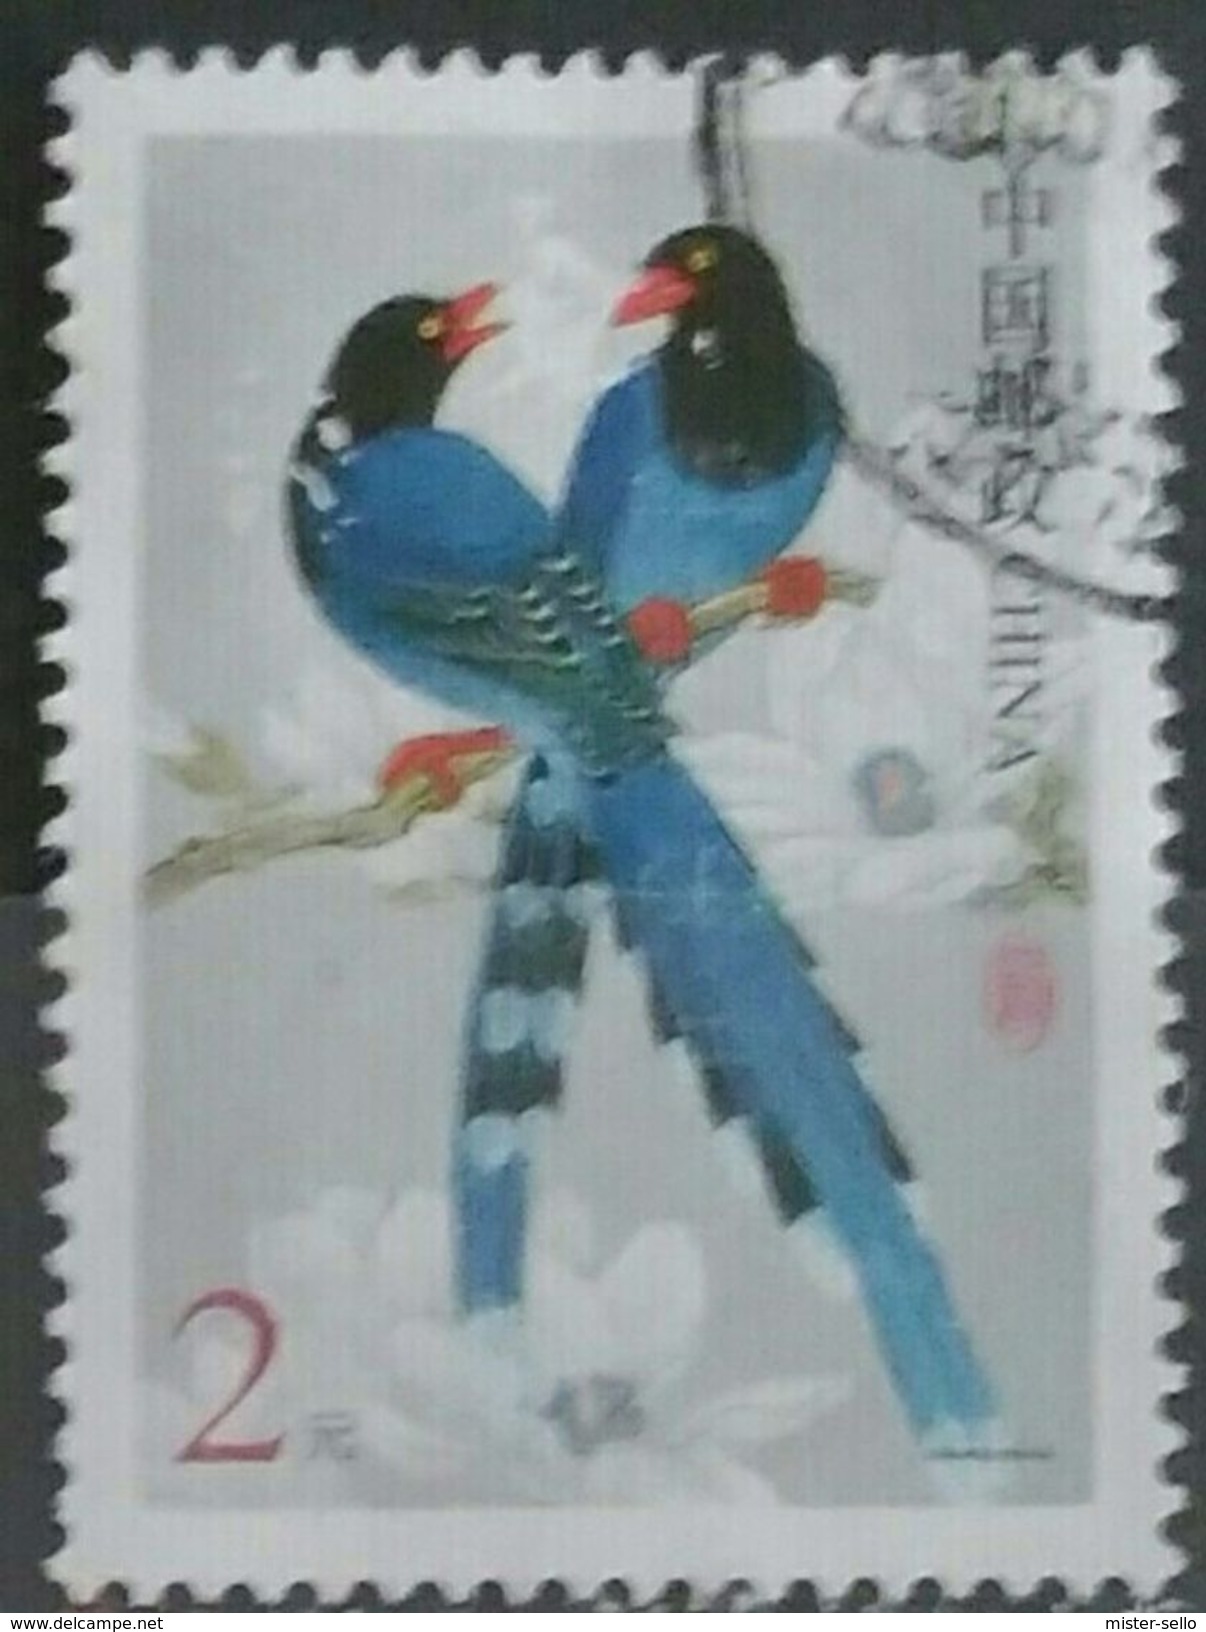 CHINA 2002 Pajaros - Birds. USADO - USED. - Used Stamps